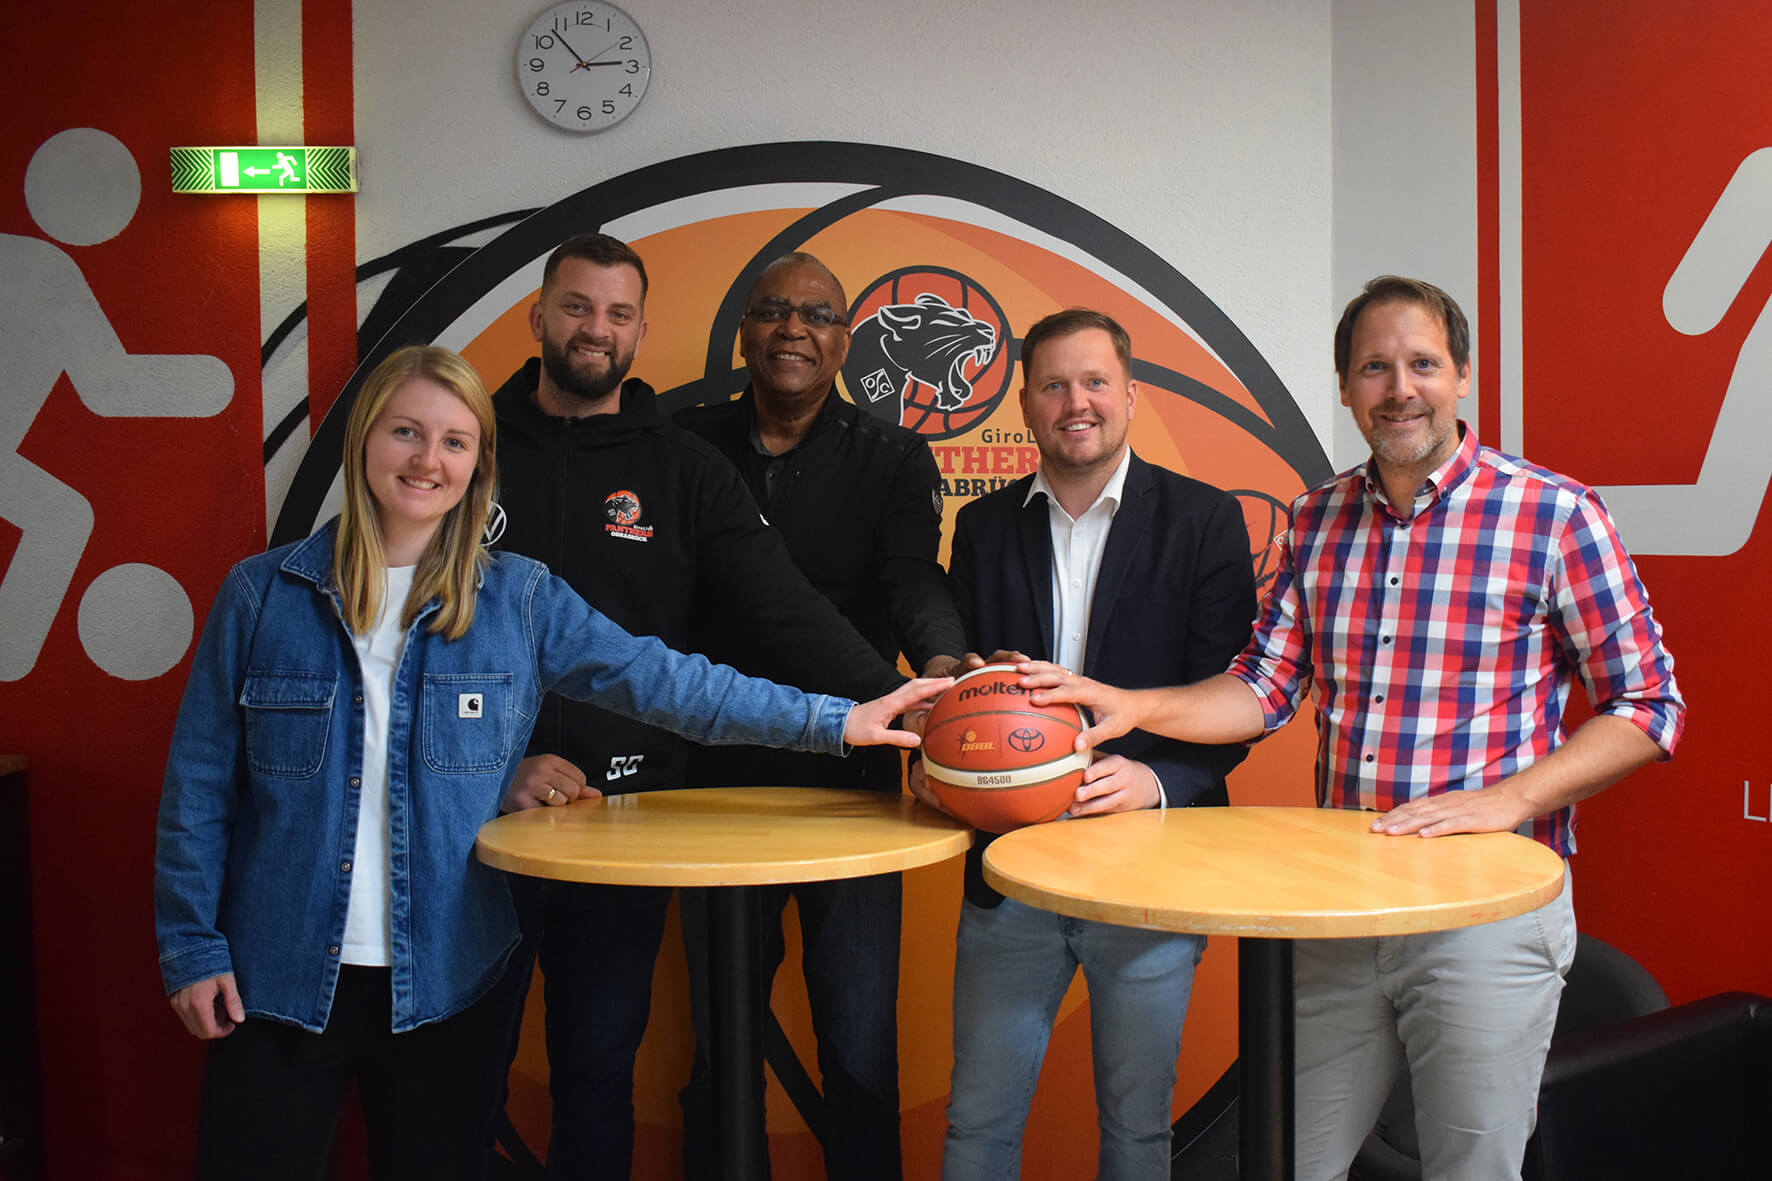 Artland Dragons und GiroLive-Panthers kooperieren für weibliche Basketballnachwuchsförderung